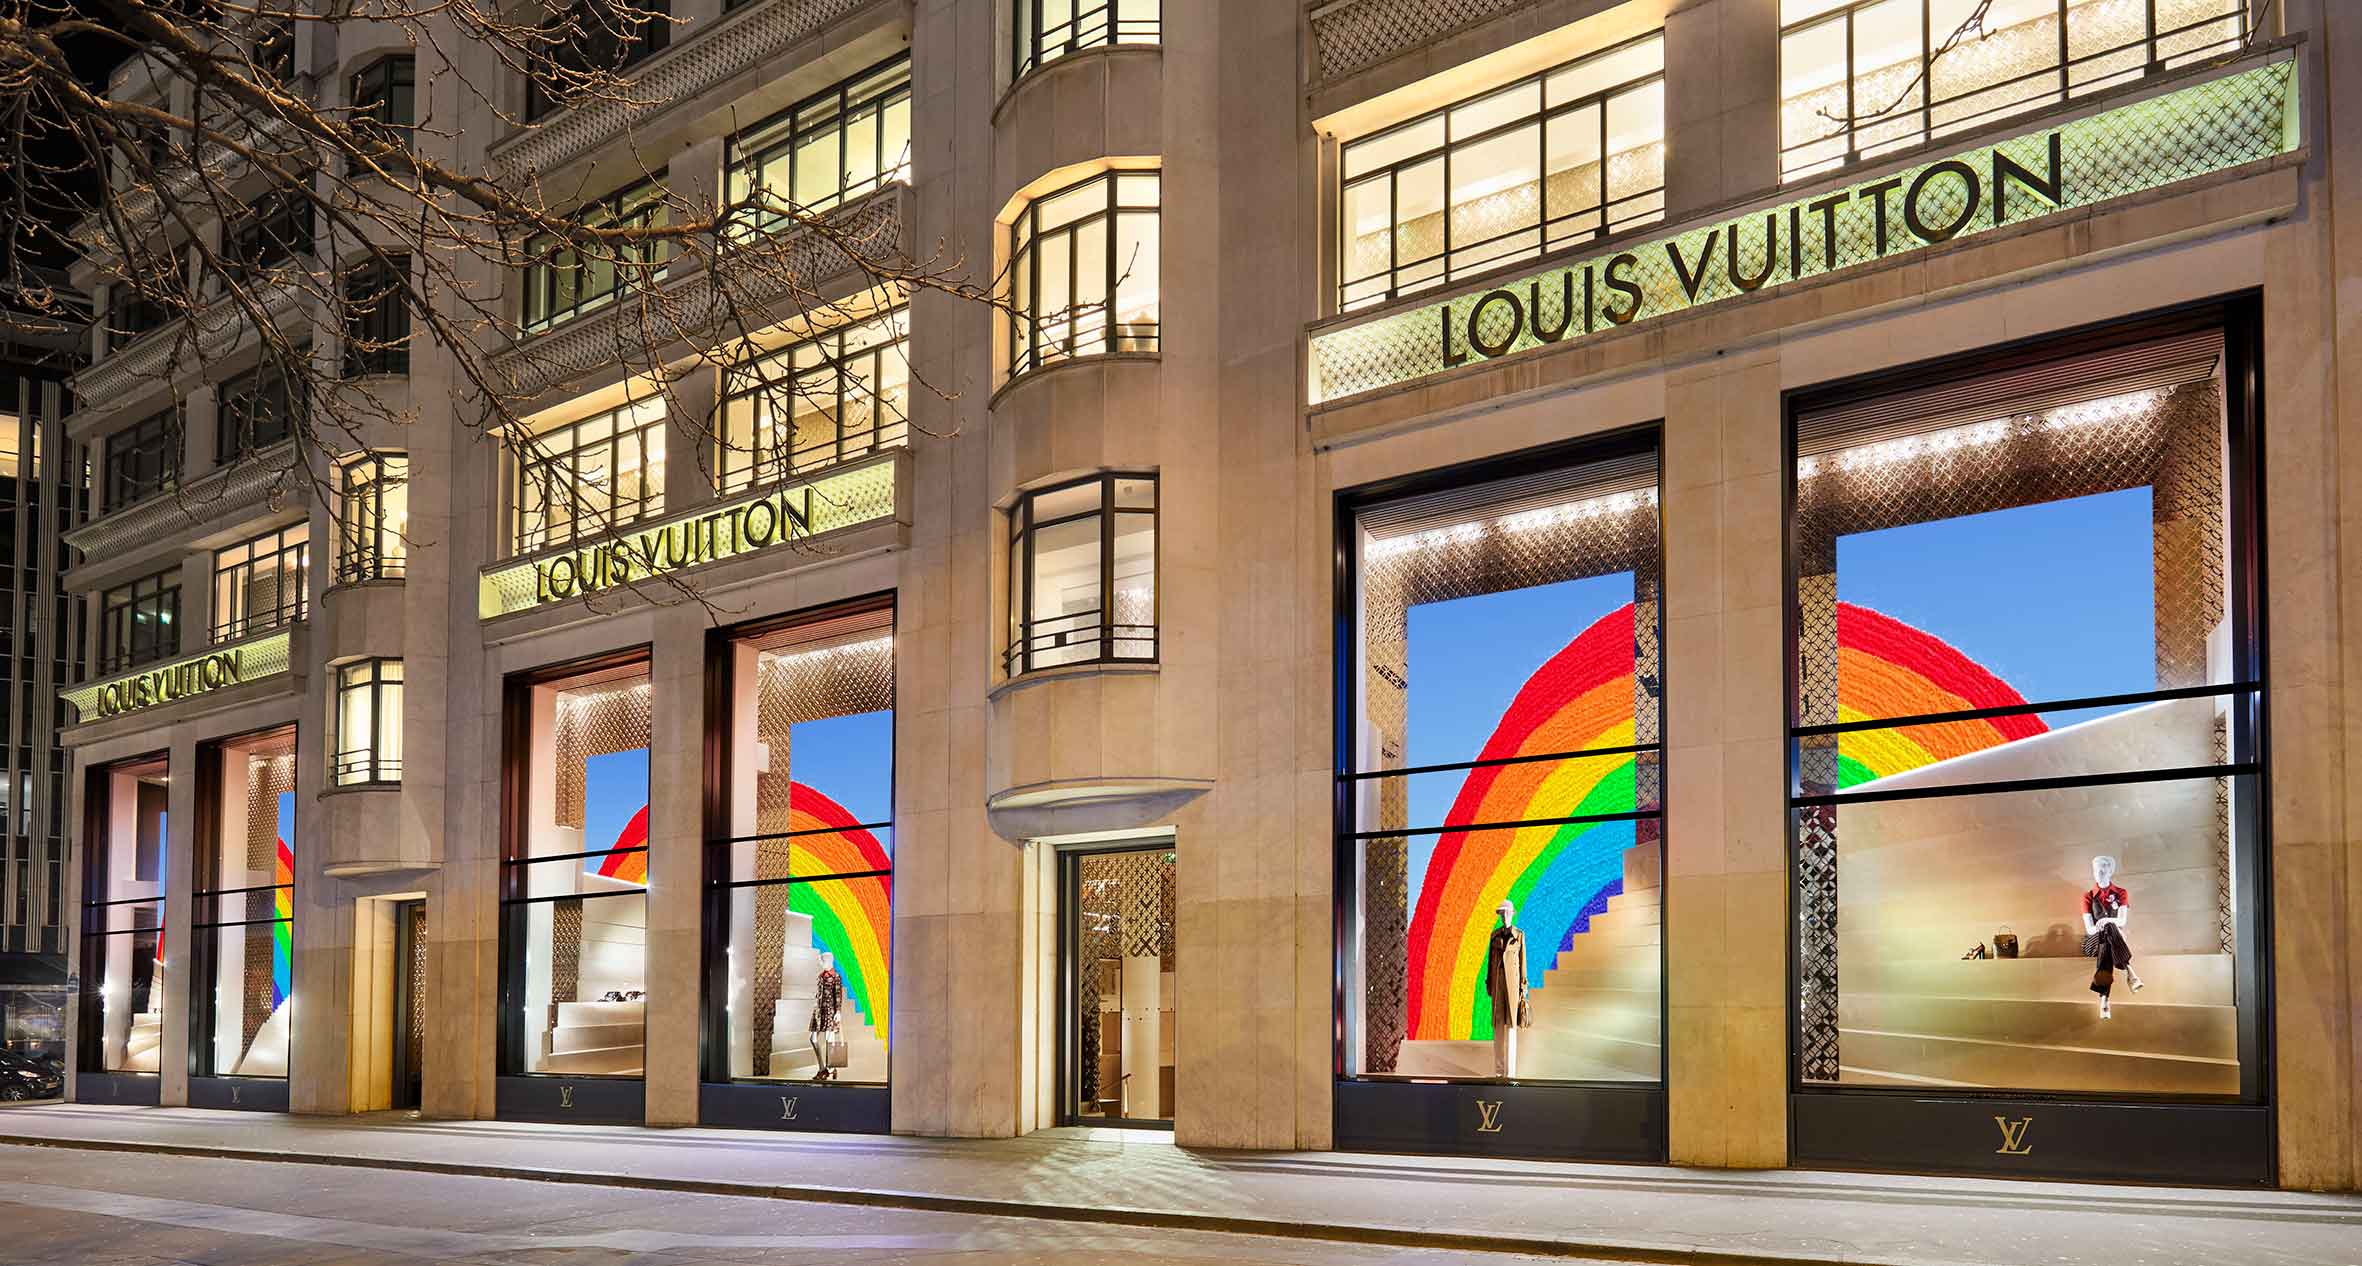 Casa pintada con logos de Louis Vuitton se vuelve viral en redes, Noticias  de México